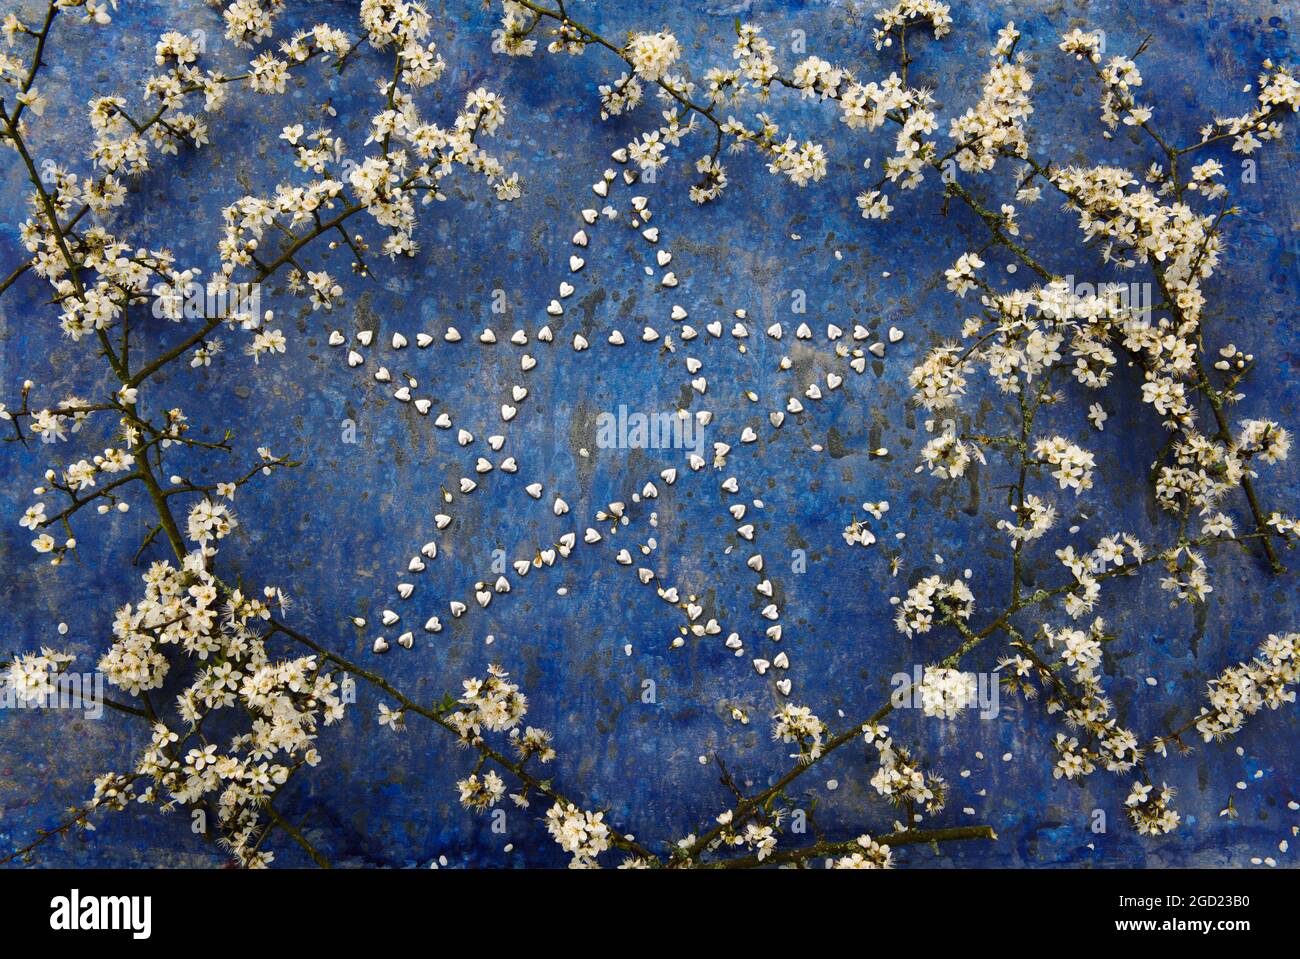 Forma de estrella hecha de pequeños corazones de plata rodeados de ramas de flor de espina negra. Foto de stock